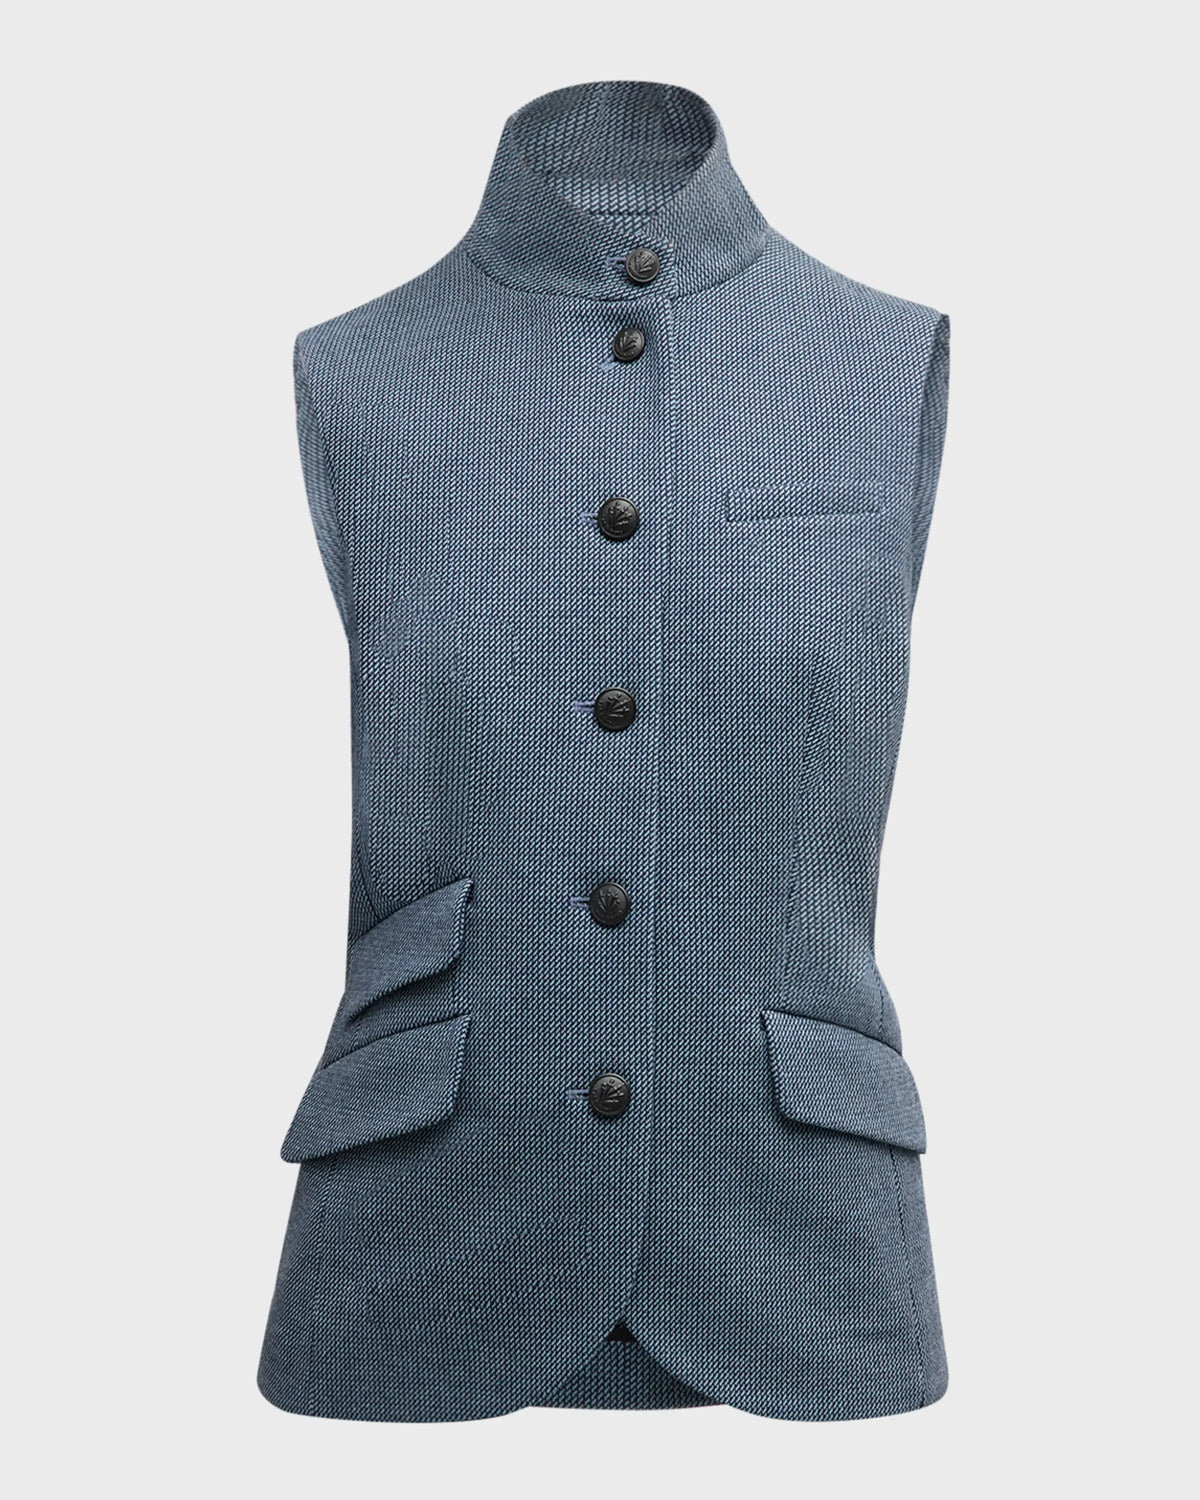 R&B Slade Italian Jacquard Vest in Blue Multi